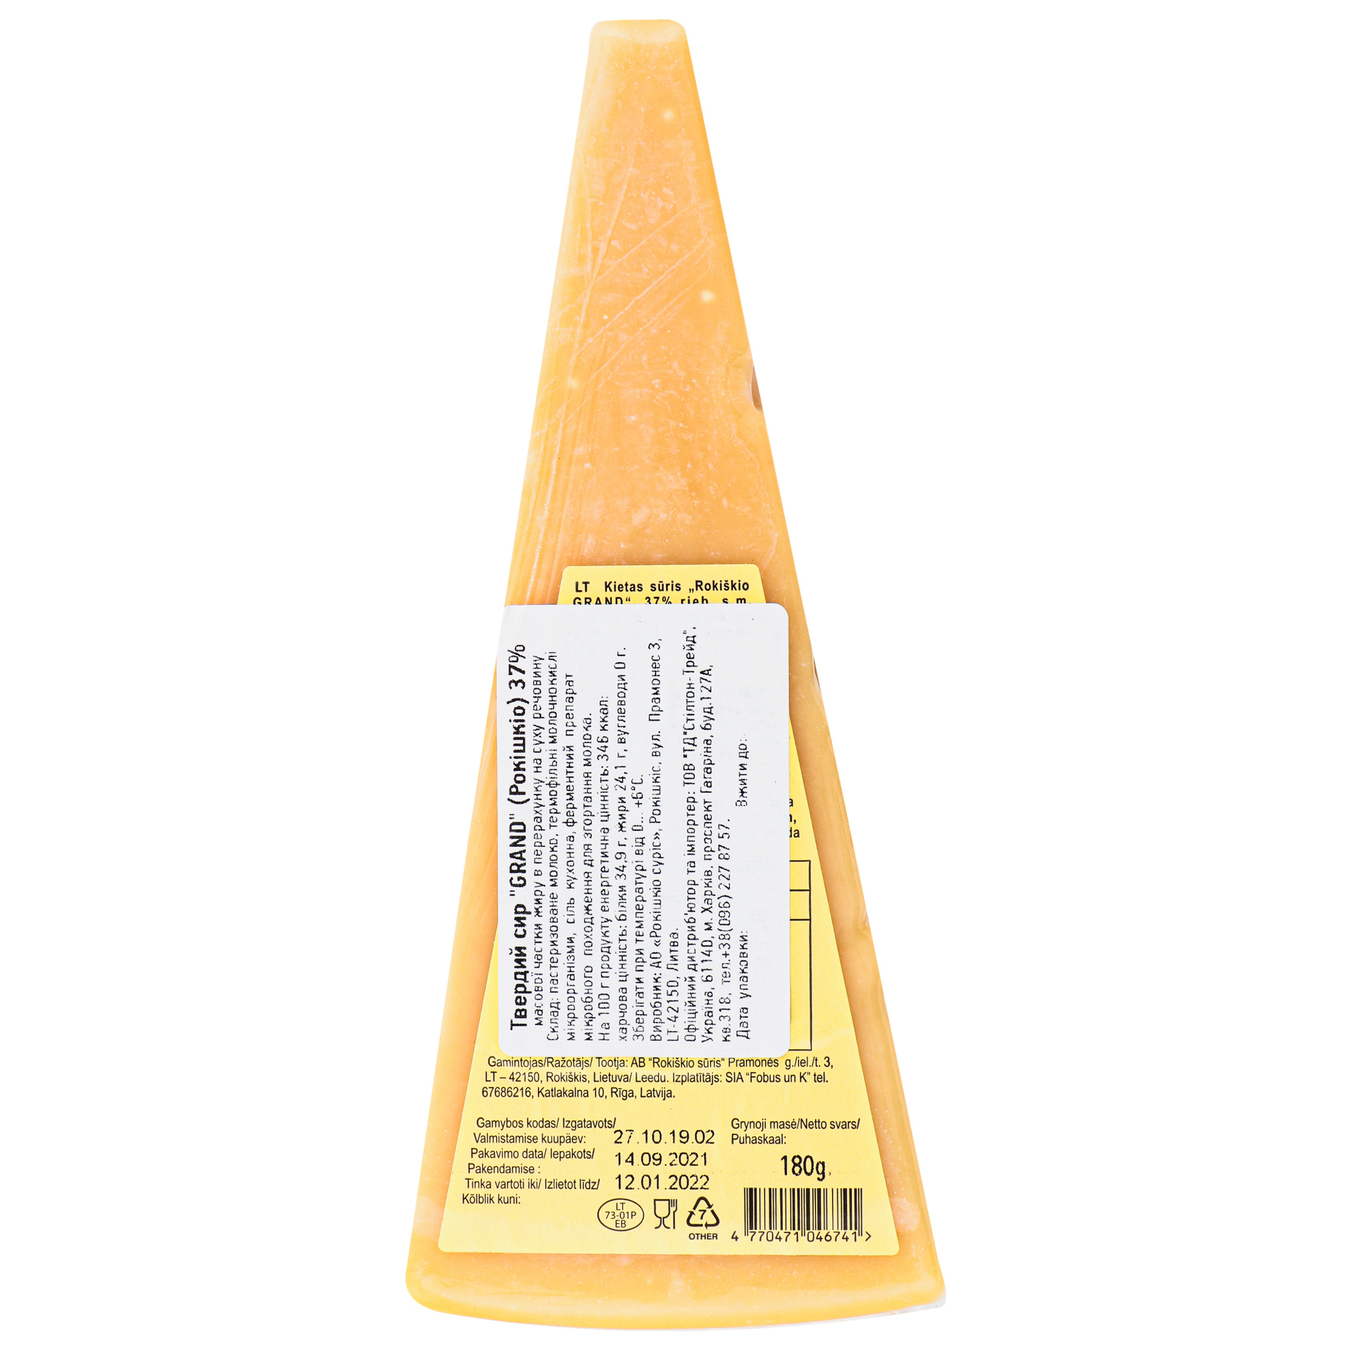 Rokiskio Grand 18 Months Cheese 37% 180g 2